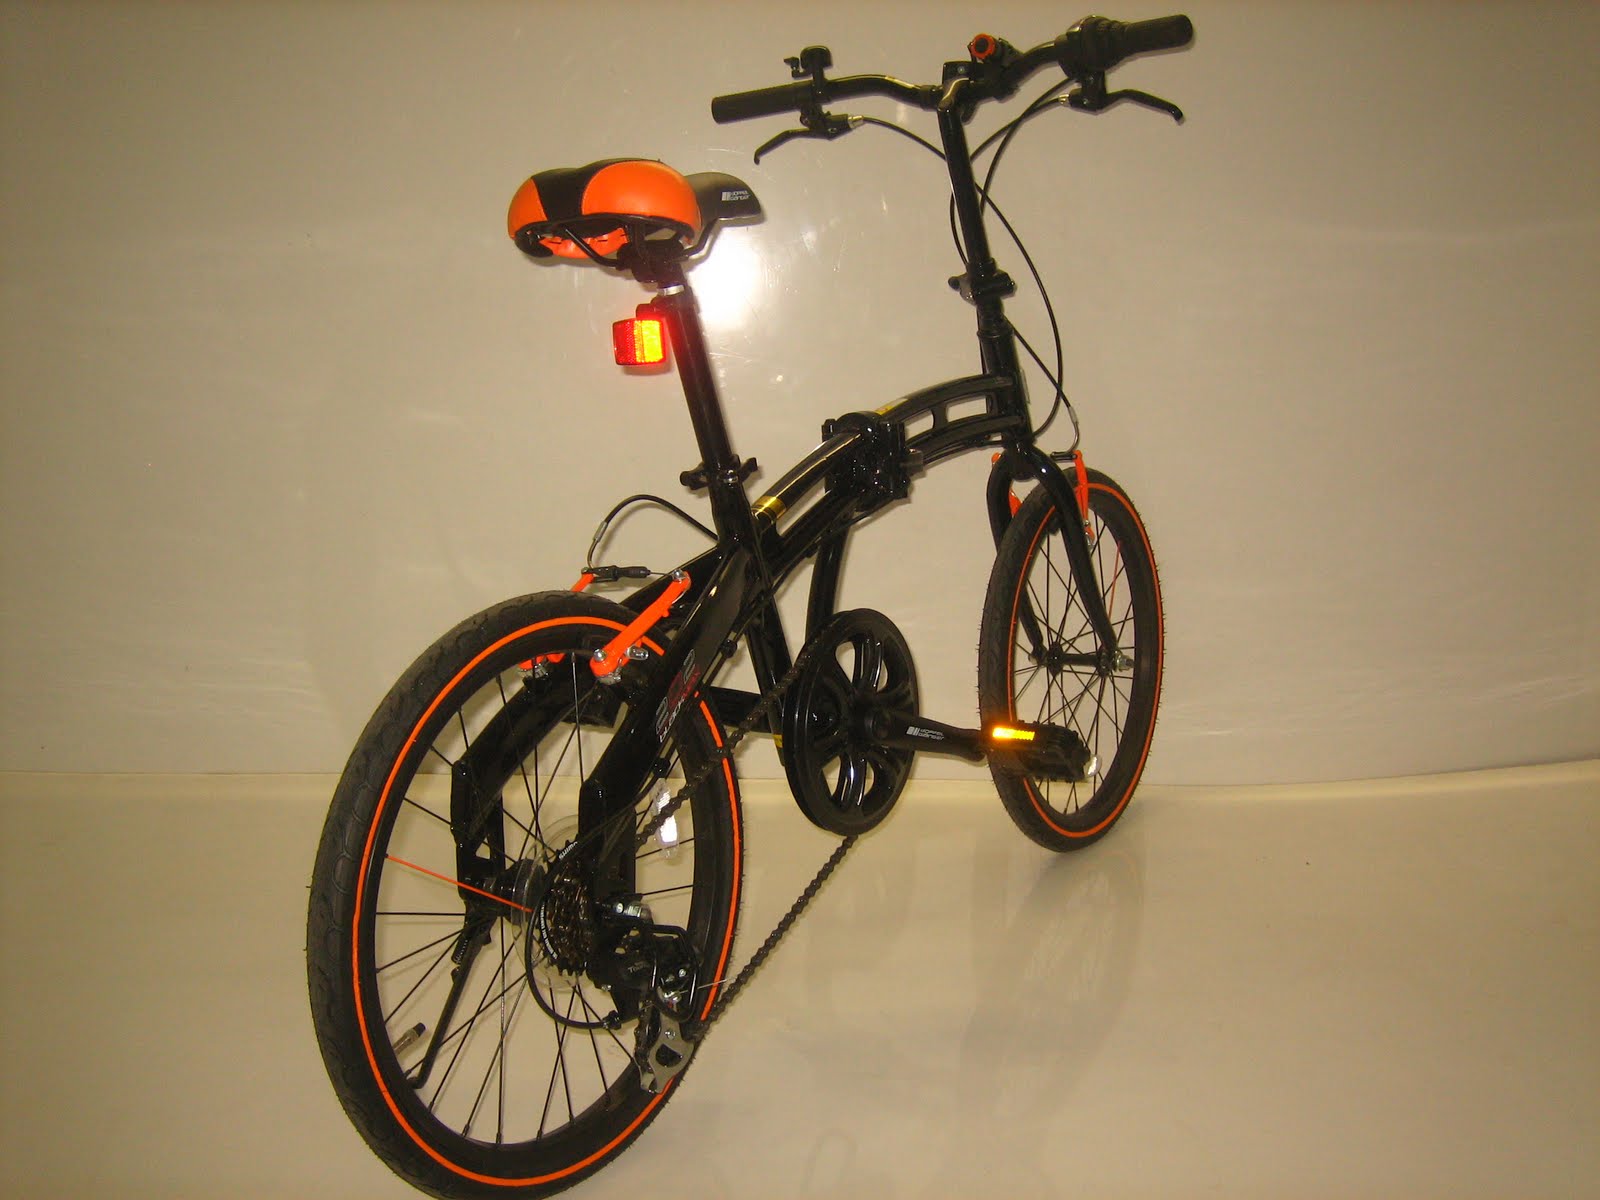 BINTANG HARAPAN: Sepeda Lipat DOPPELGANGER 202 Black Max